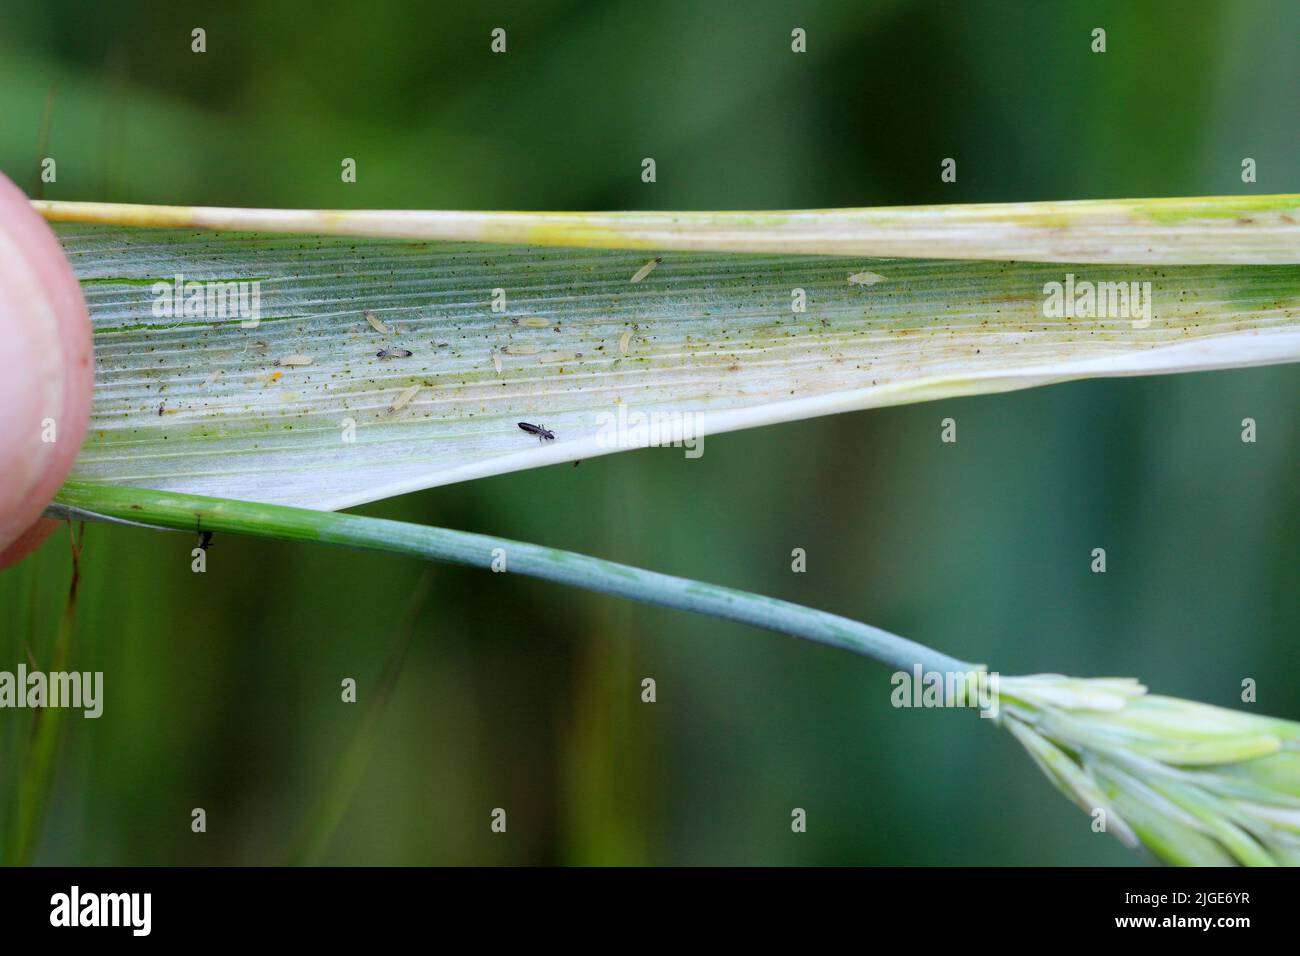 Durch Thripse geschädigte Gerstenpflanzen. Flaggenblatt chlorotisch verfärbt. Insekten ernähren sich auf der Innenseite des Blattes, in der Nähe des Ohrs. Stockfoto